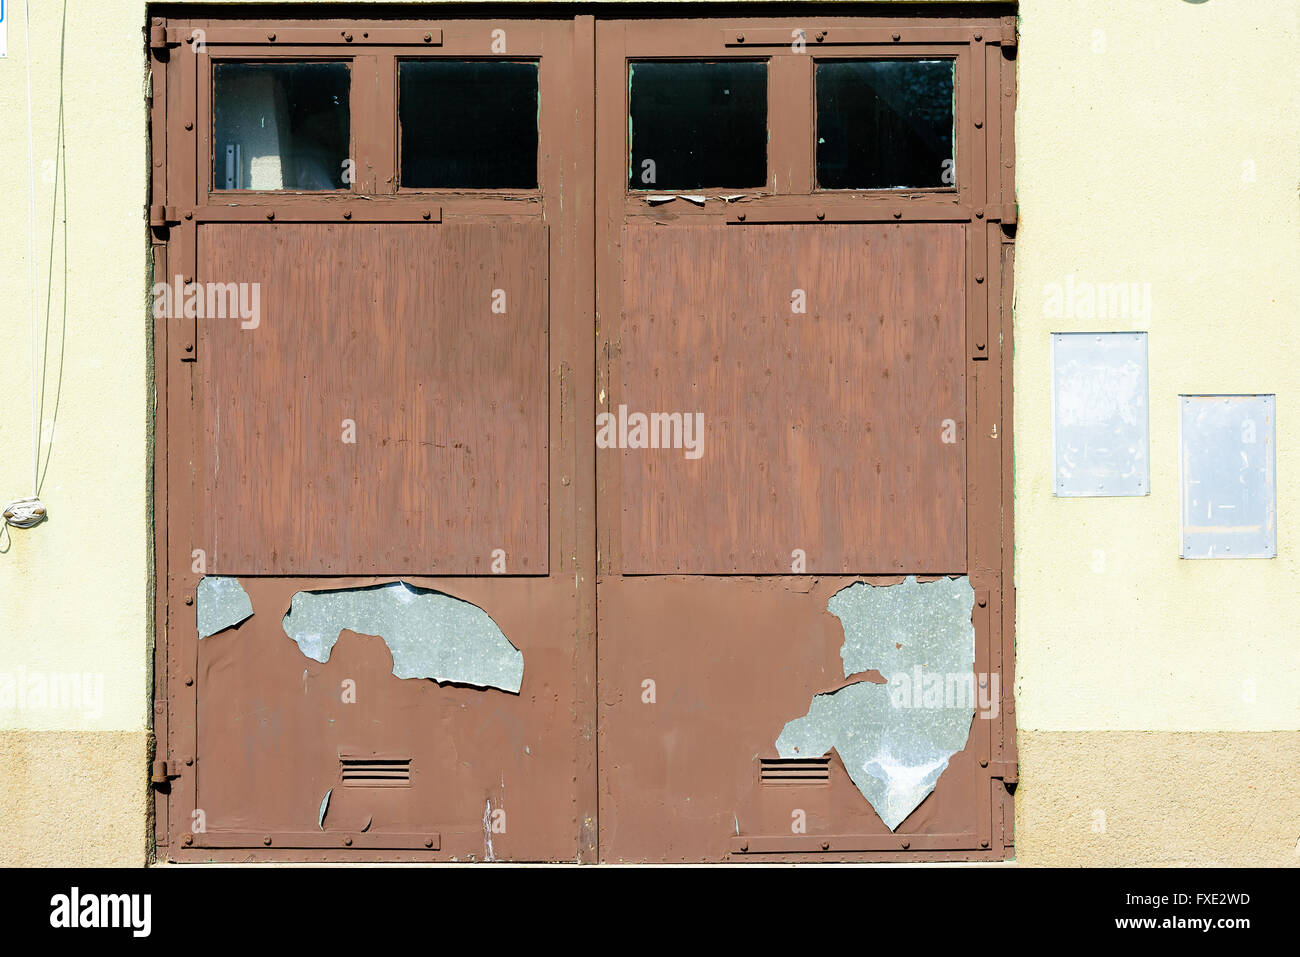 Garagentor mit abblätternde Farbe braun und verwittert aussehen. Leere Schilder neben der Tür. Stockfoto